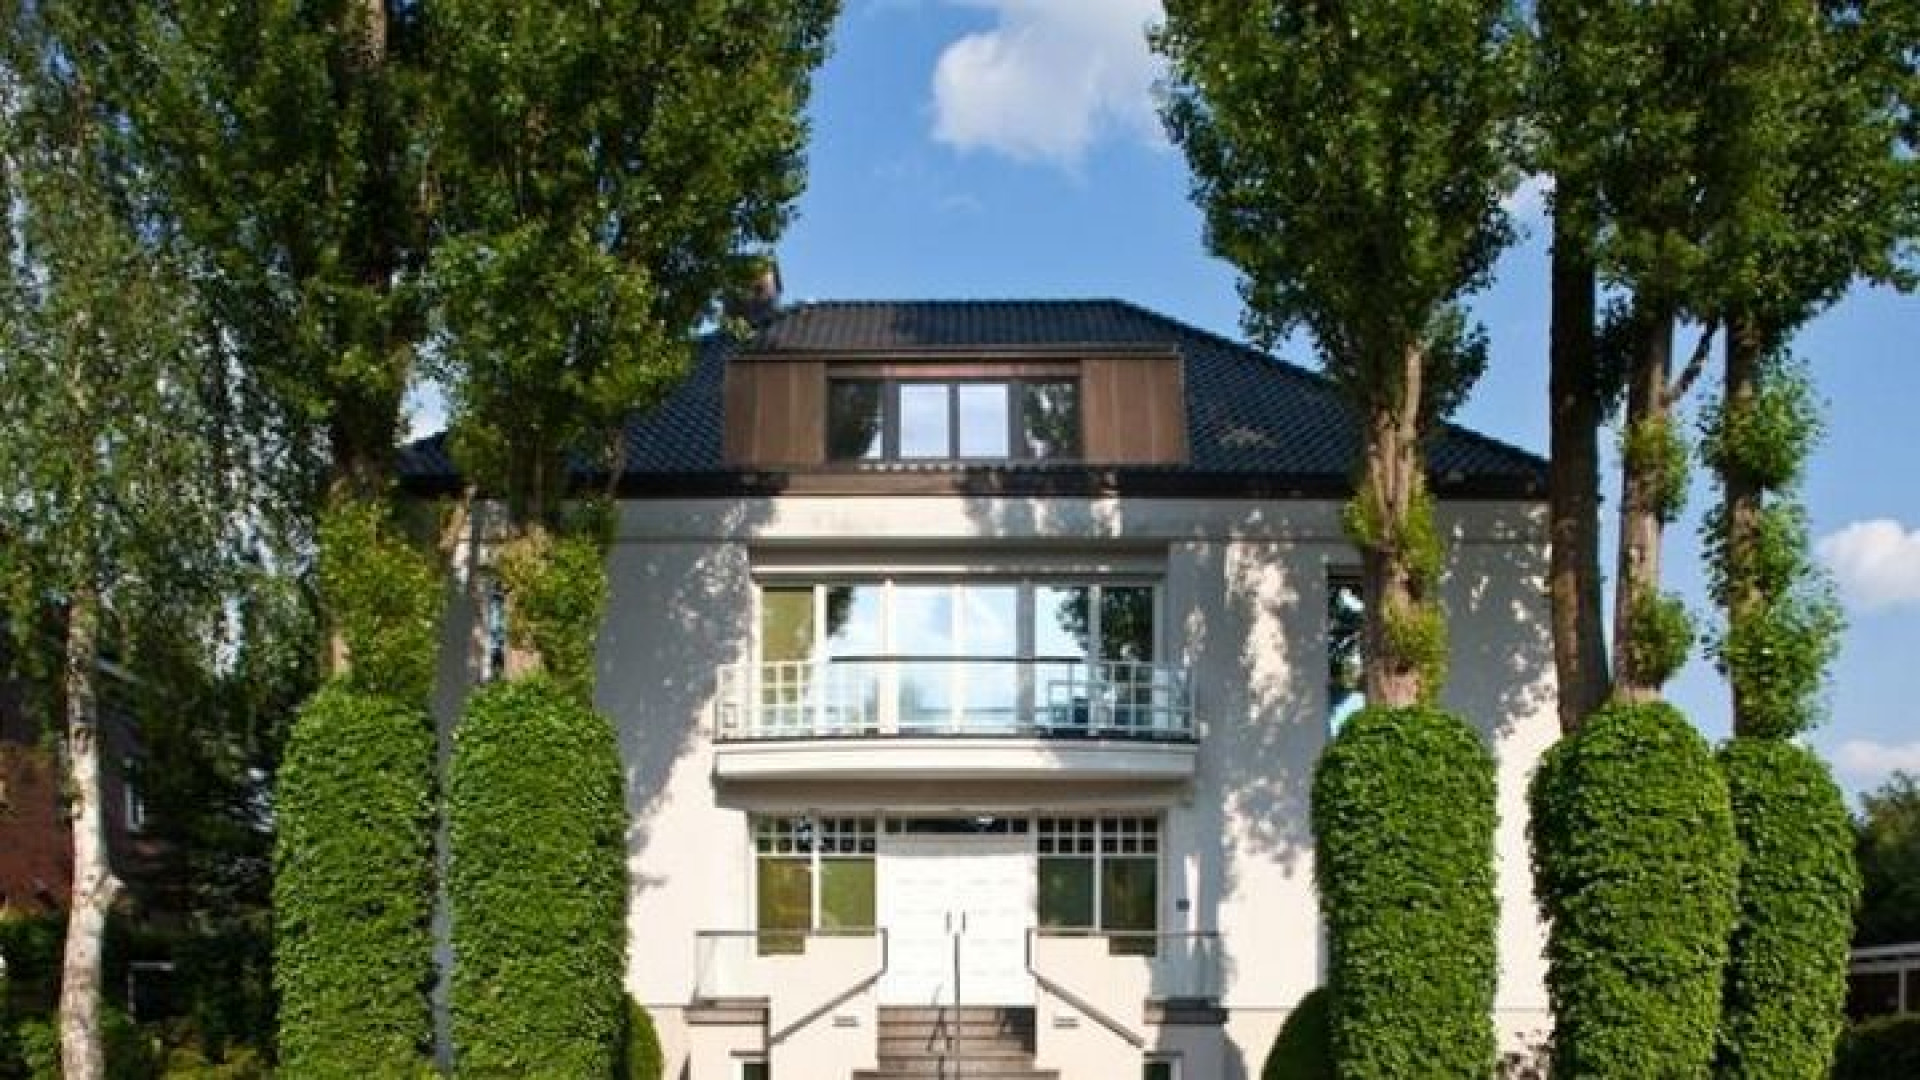 Sabia woont nog altijd in luxe villa aan de Alster in Hamburg. Zie foto's 1